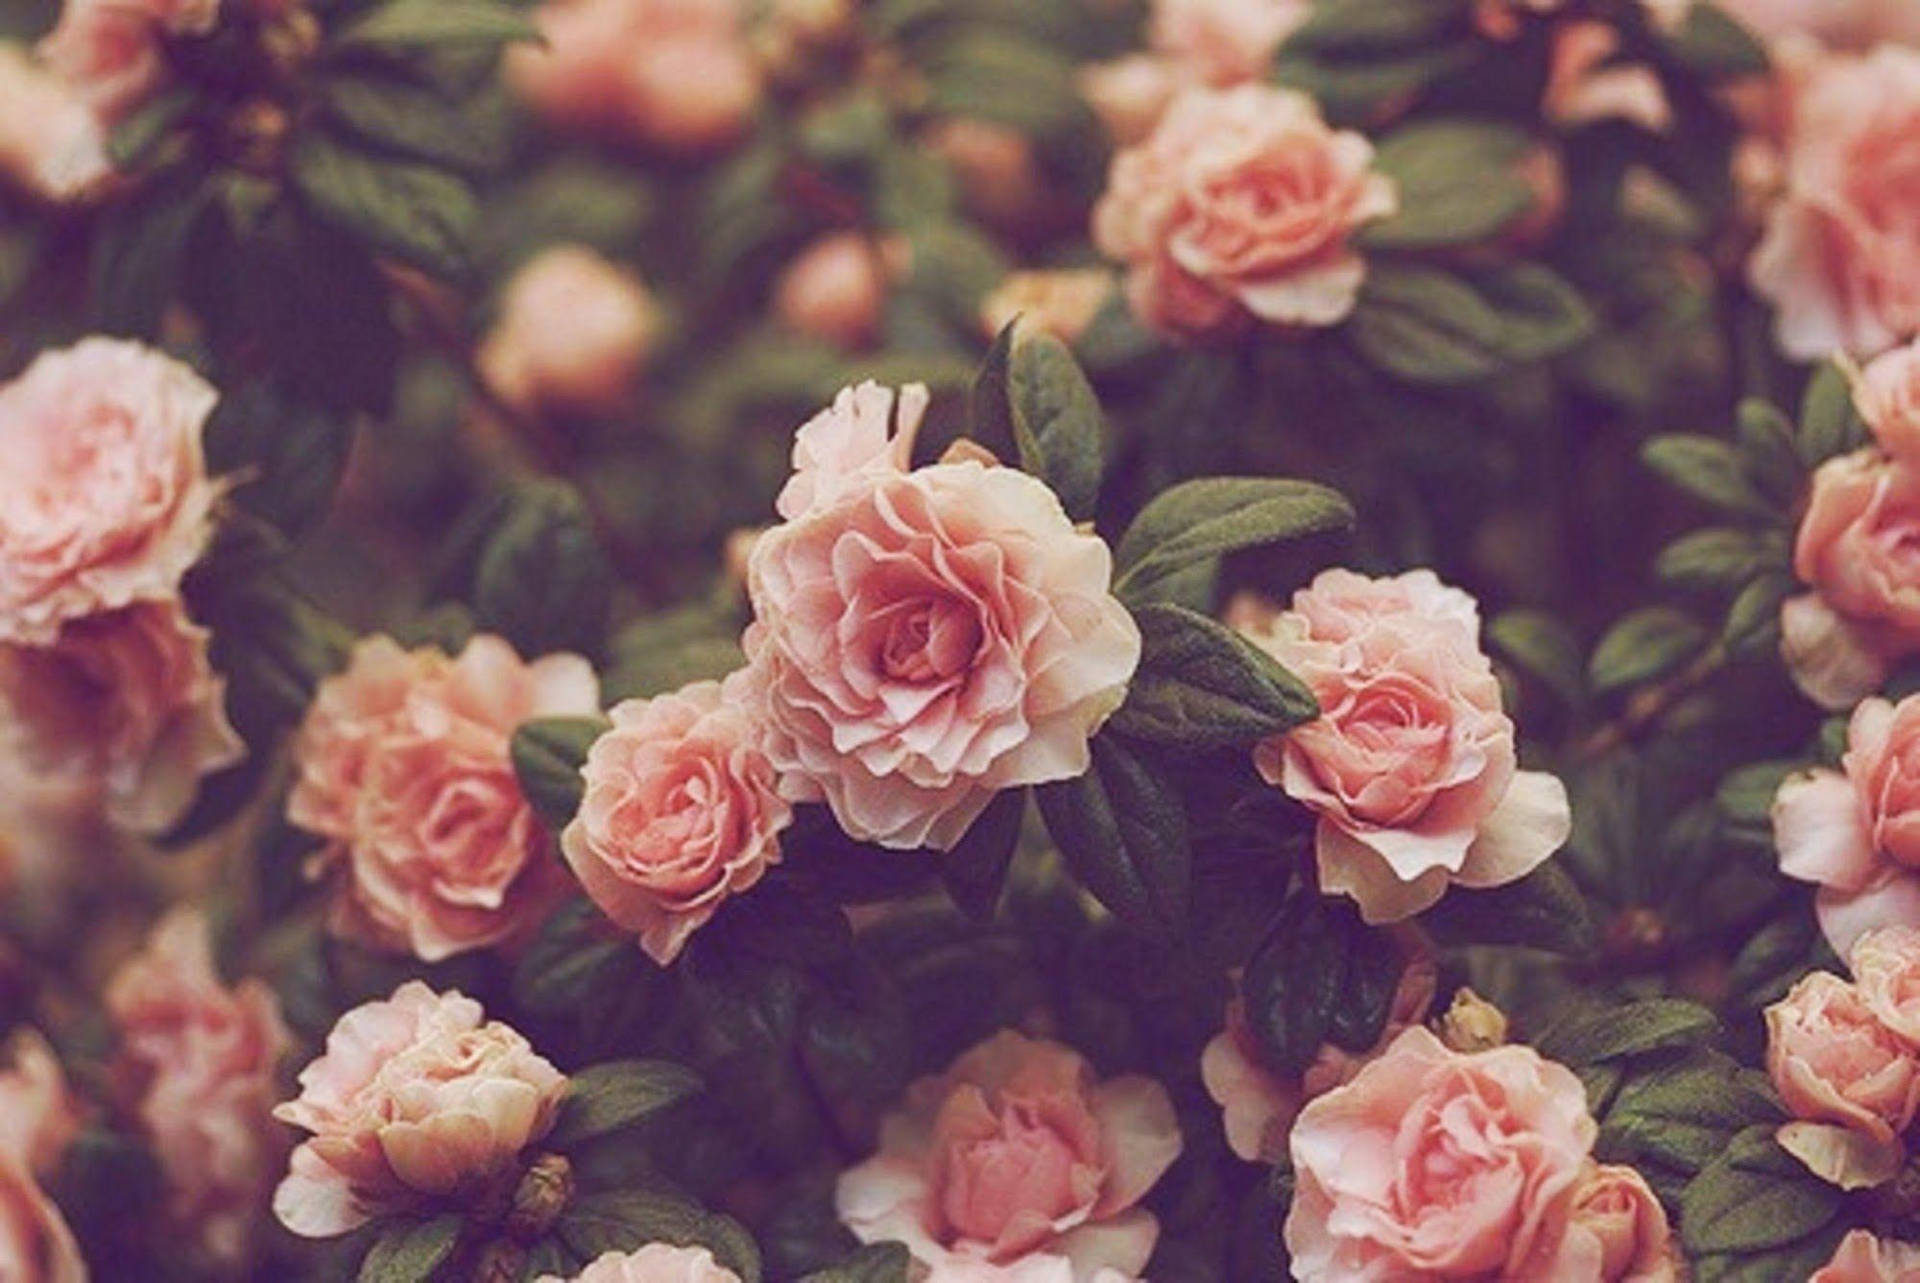 Vintage Flower Aesthetic Garden Rose Bush Wallpaper